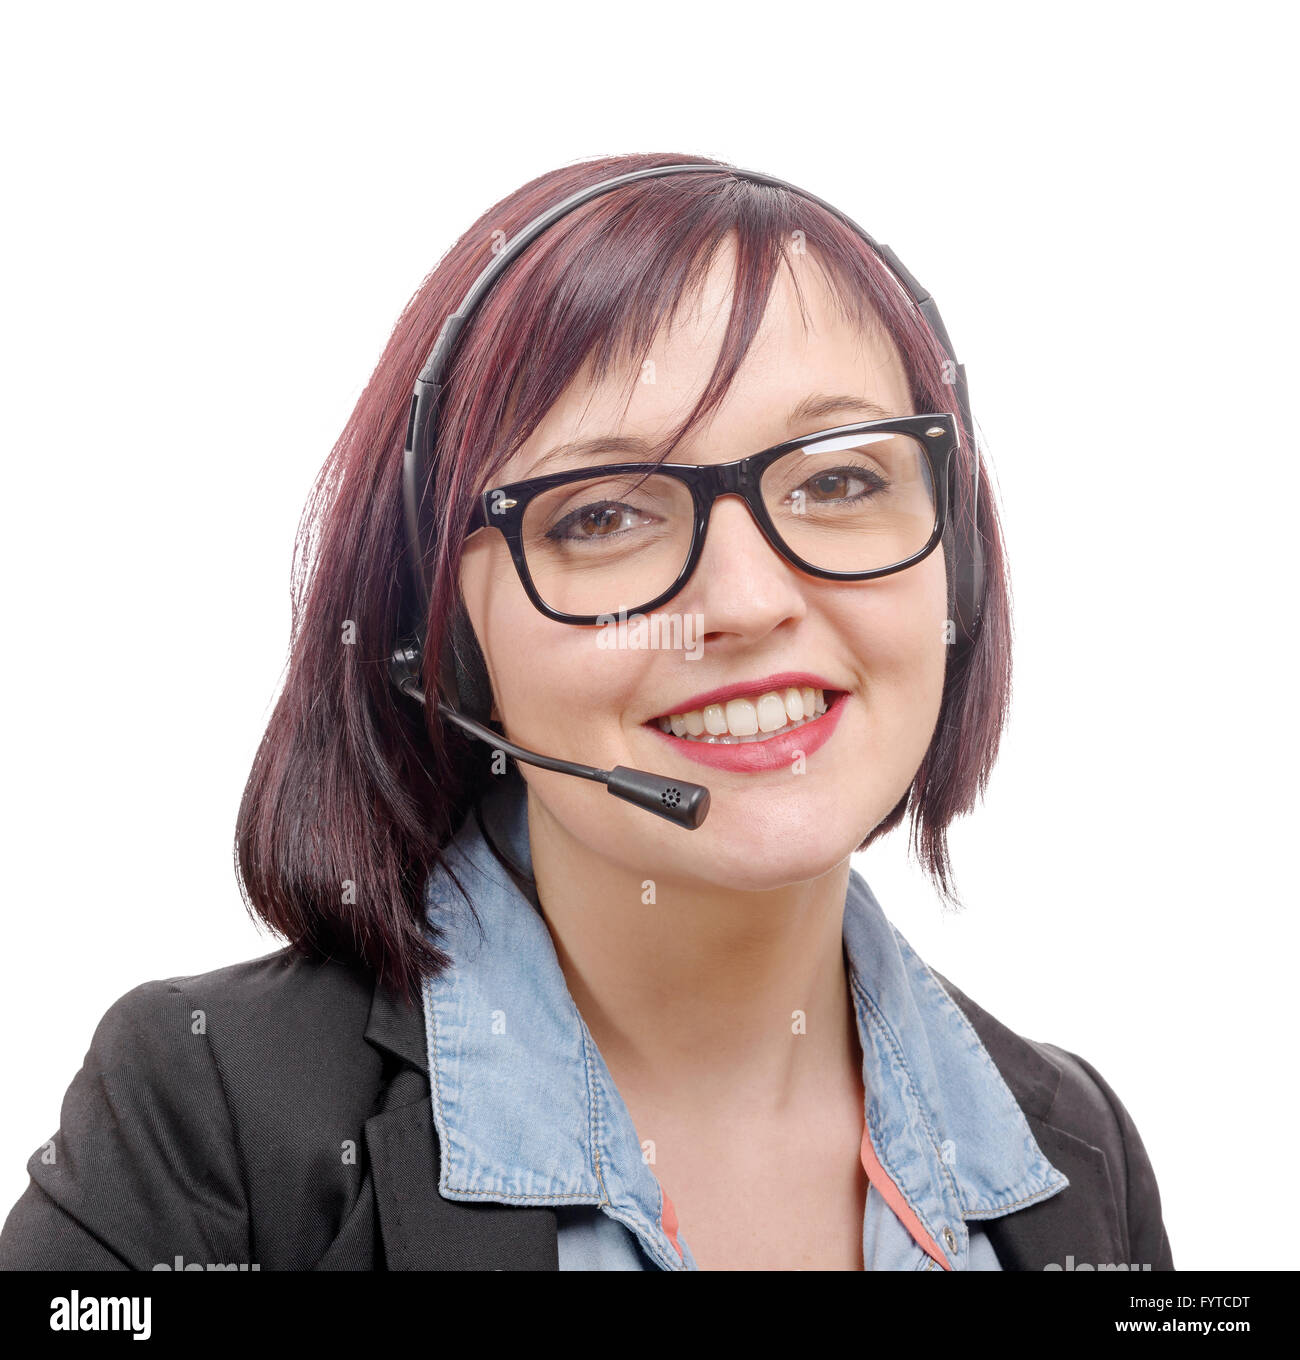 Un close-up retrato de mujer sonriente con auriculares Foto de stock